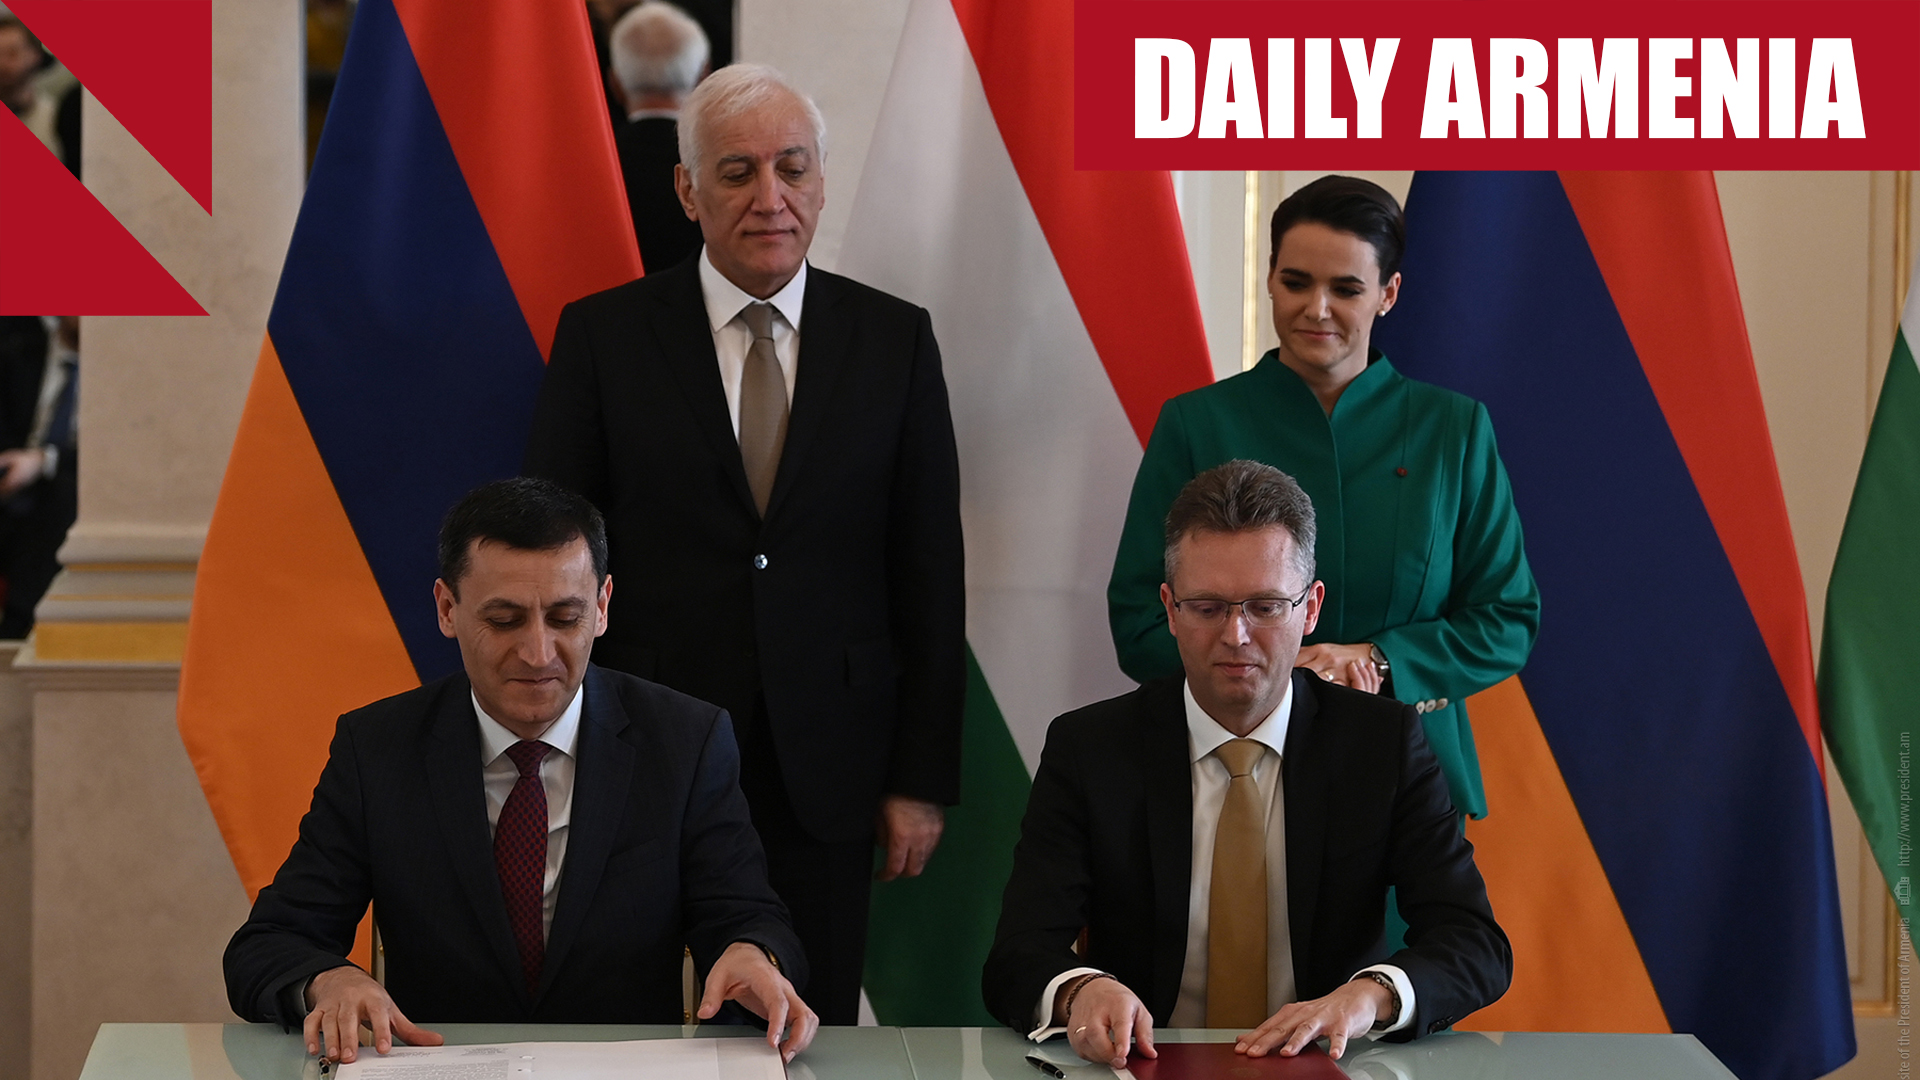 Hungary blocking EU military aid to Armenia, RFE/RL reports